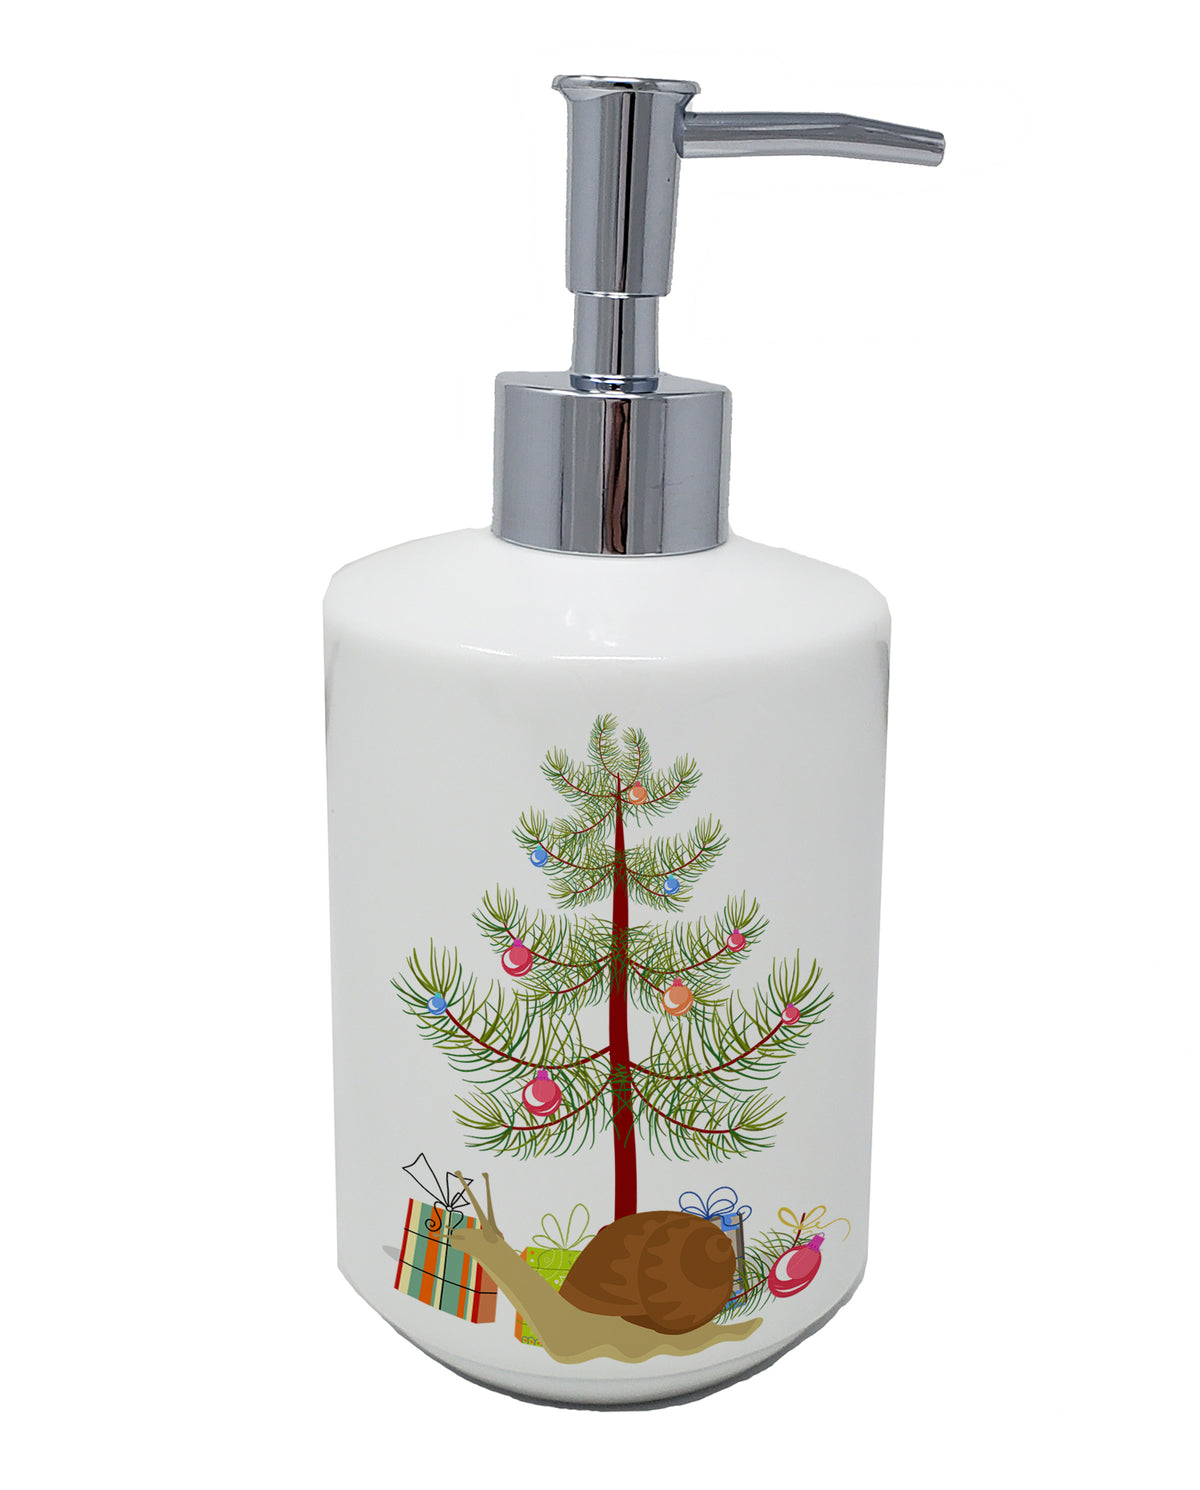 Buy this Garden Snail Merry Christmas Ceramic Soap Dispenser